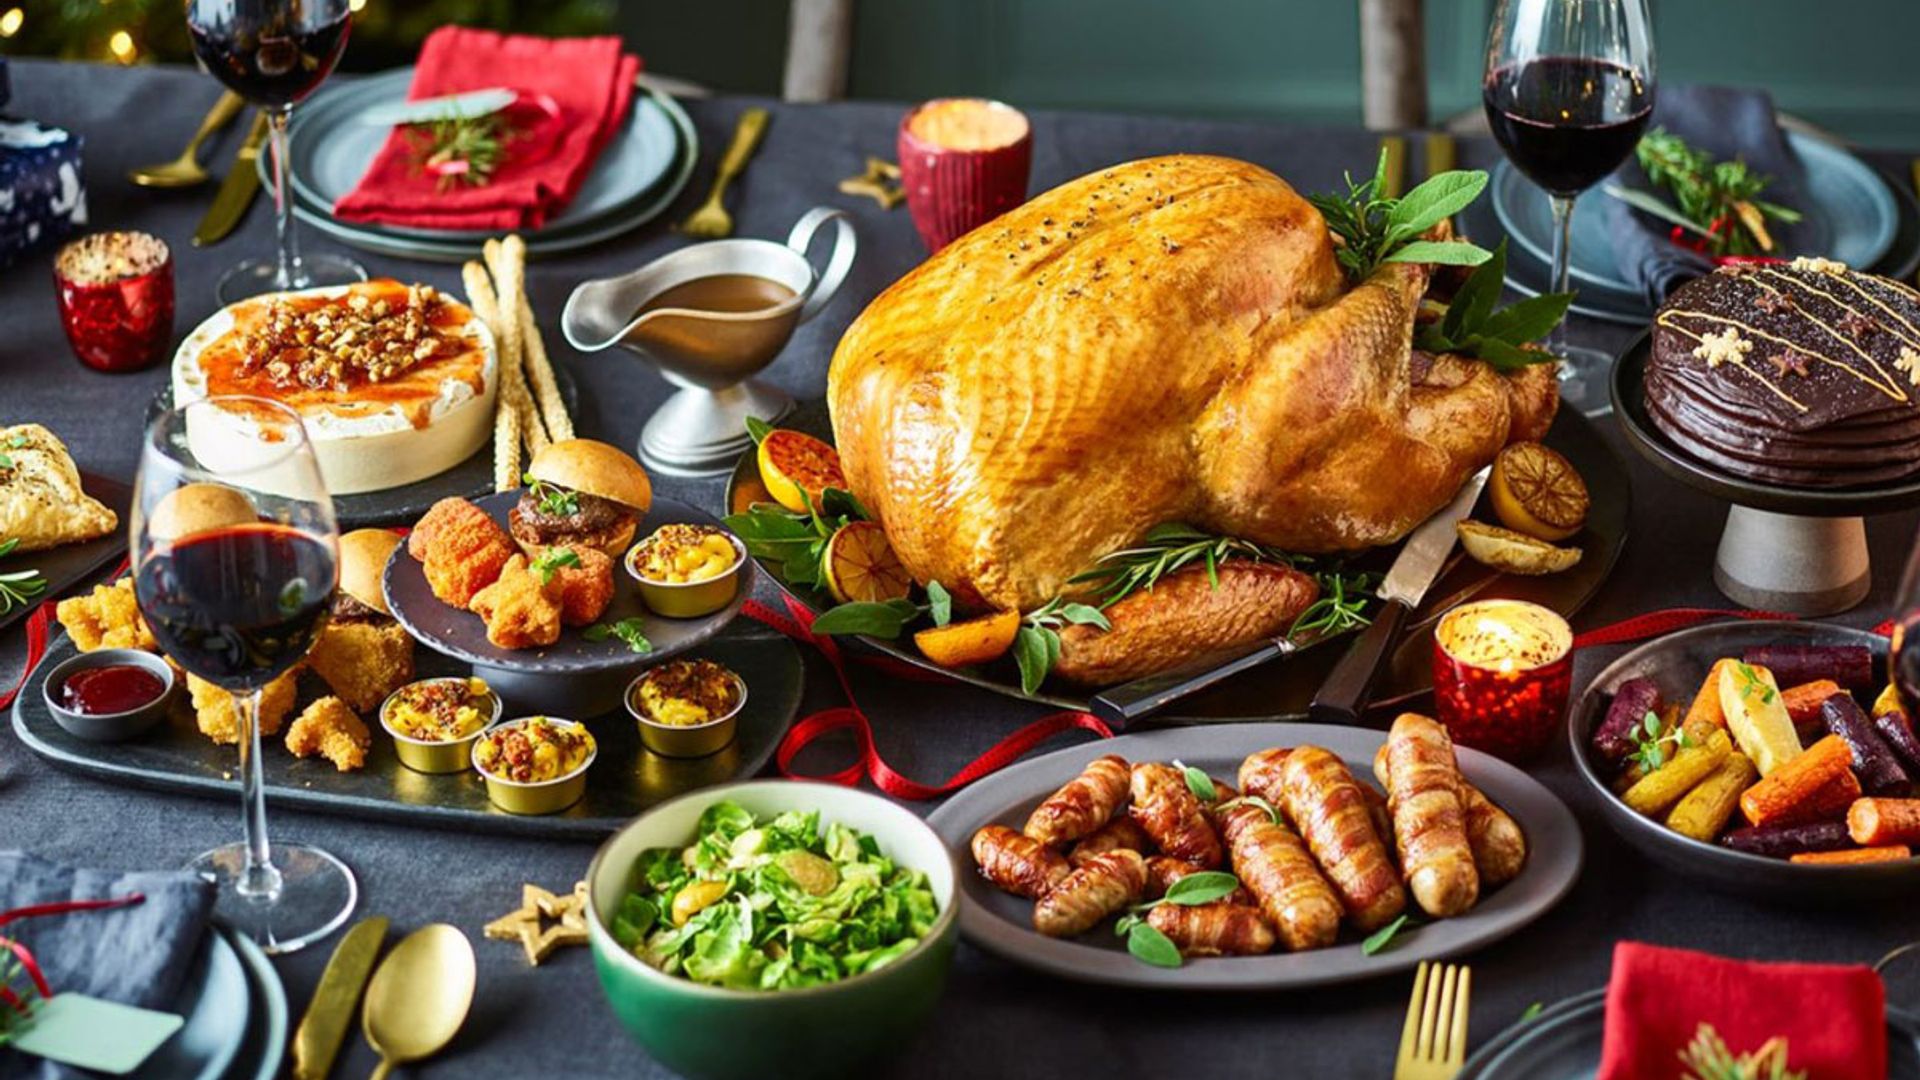 Tesco Christmas food and drinks 2021: Top 16 picks